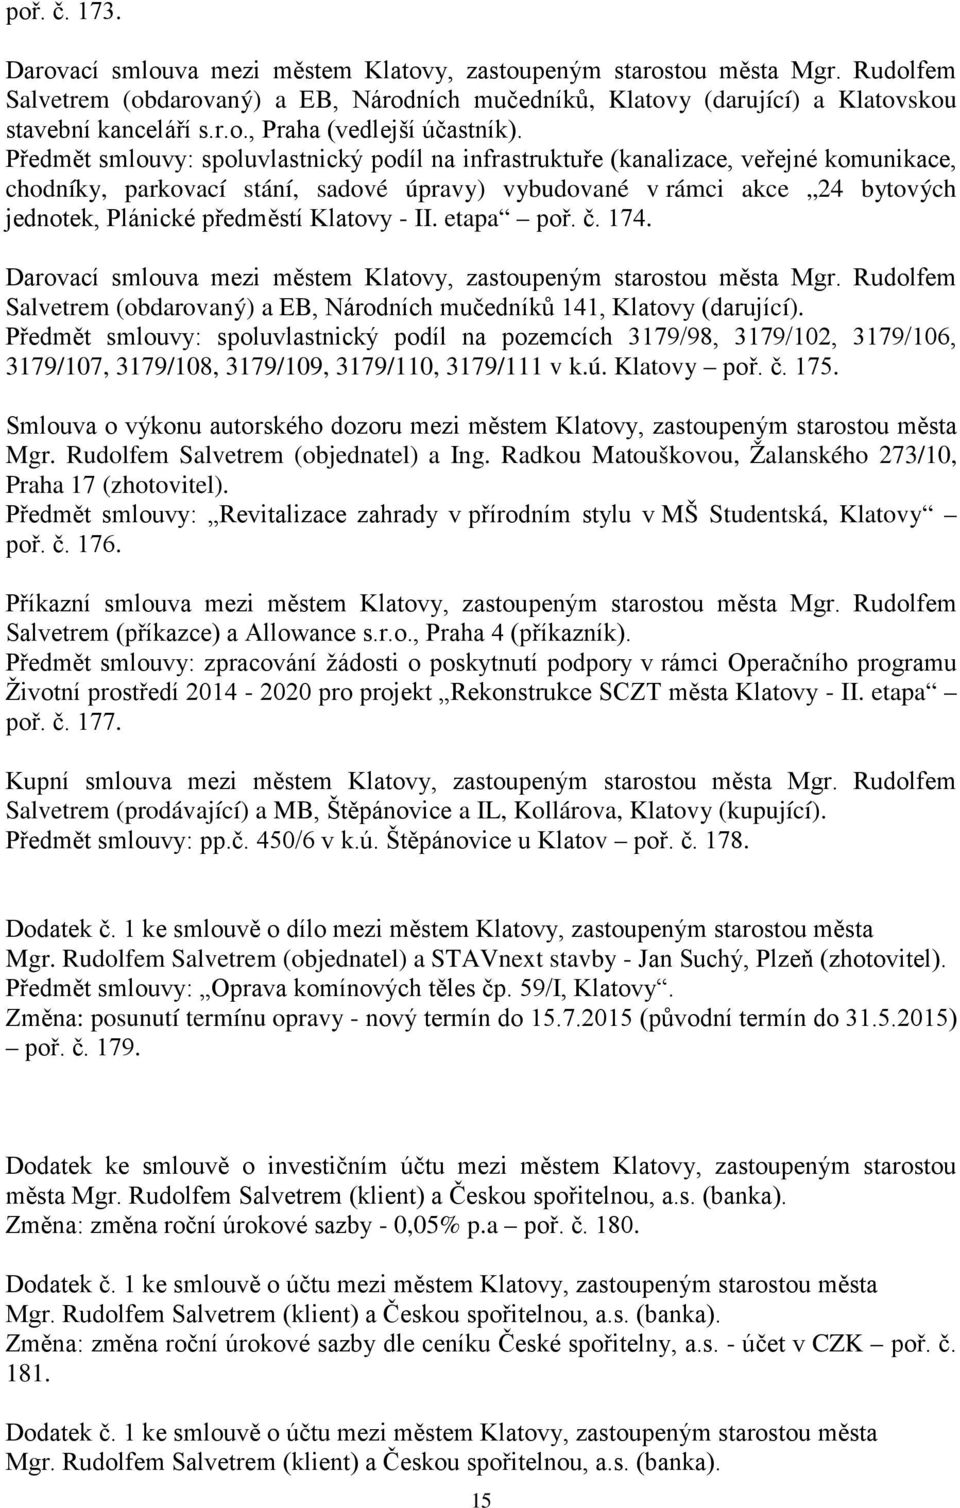 Klatovy - II. etapa poř. č. 174. Darovací smlouva mezi městem Klatovy, zastoupeným starostou města Mgr. Rudolfem Salvetrem (obdarovaný) a EB, Národních mučedníků 141, Klatovy (darující).